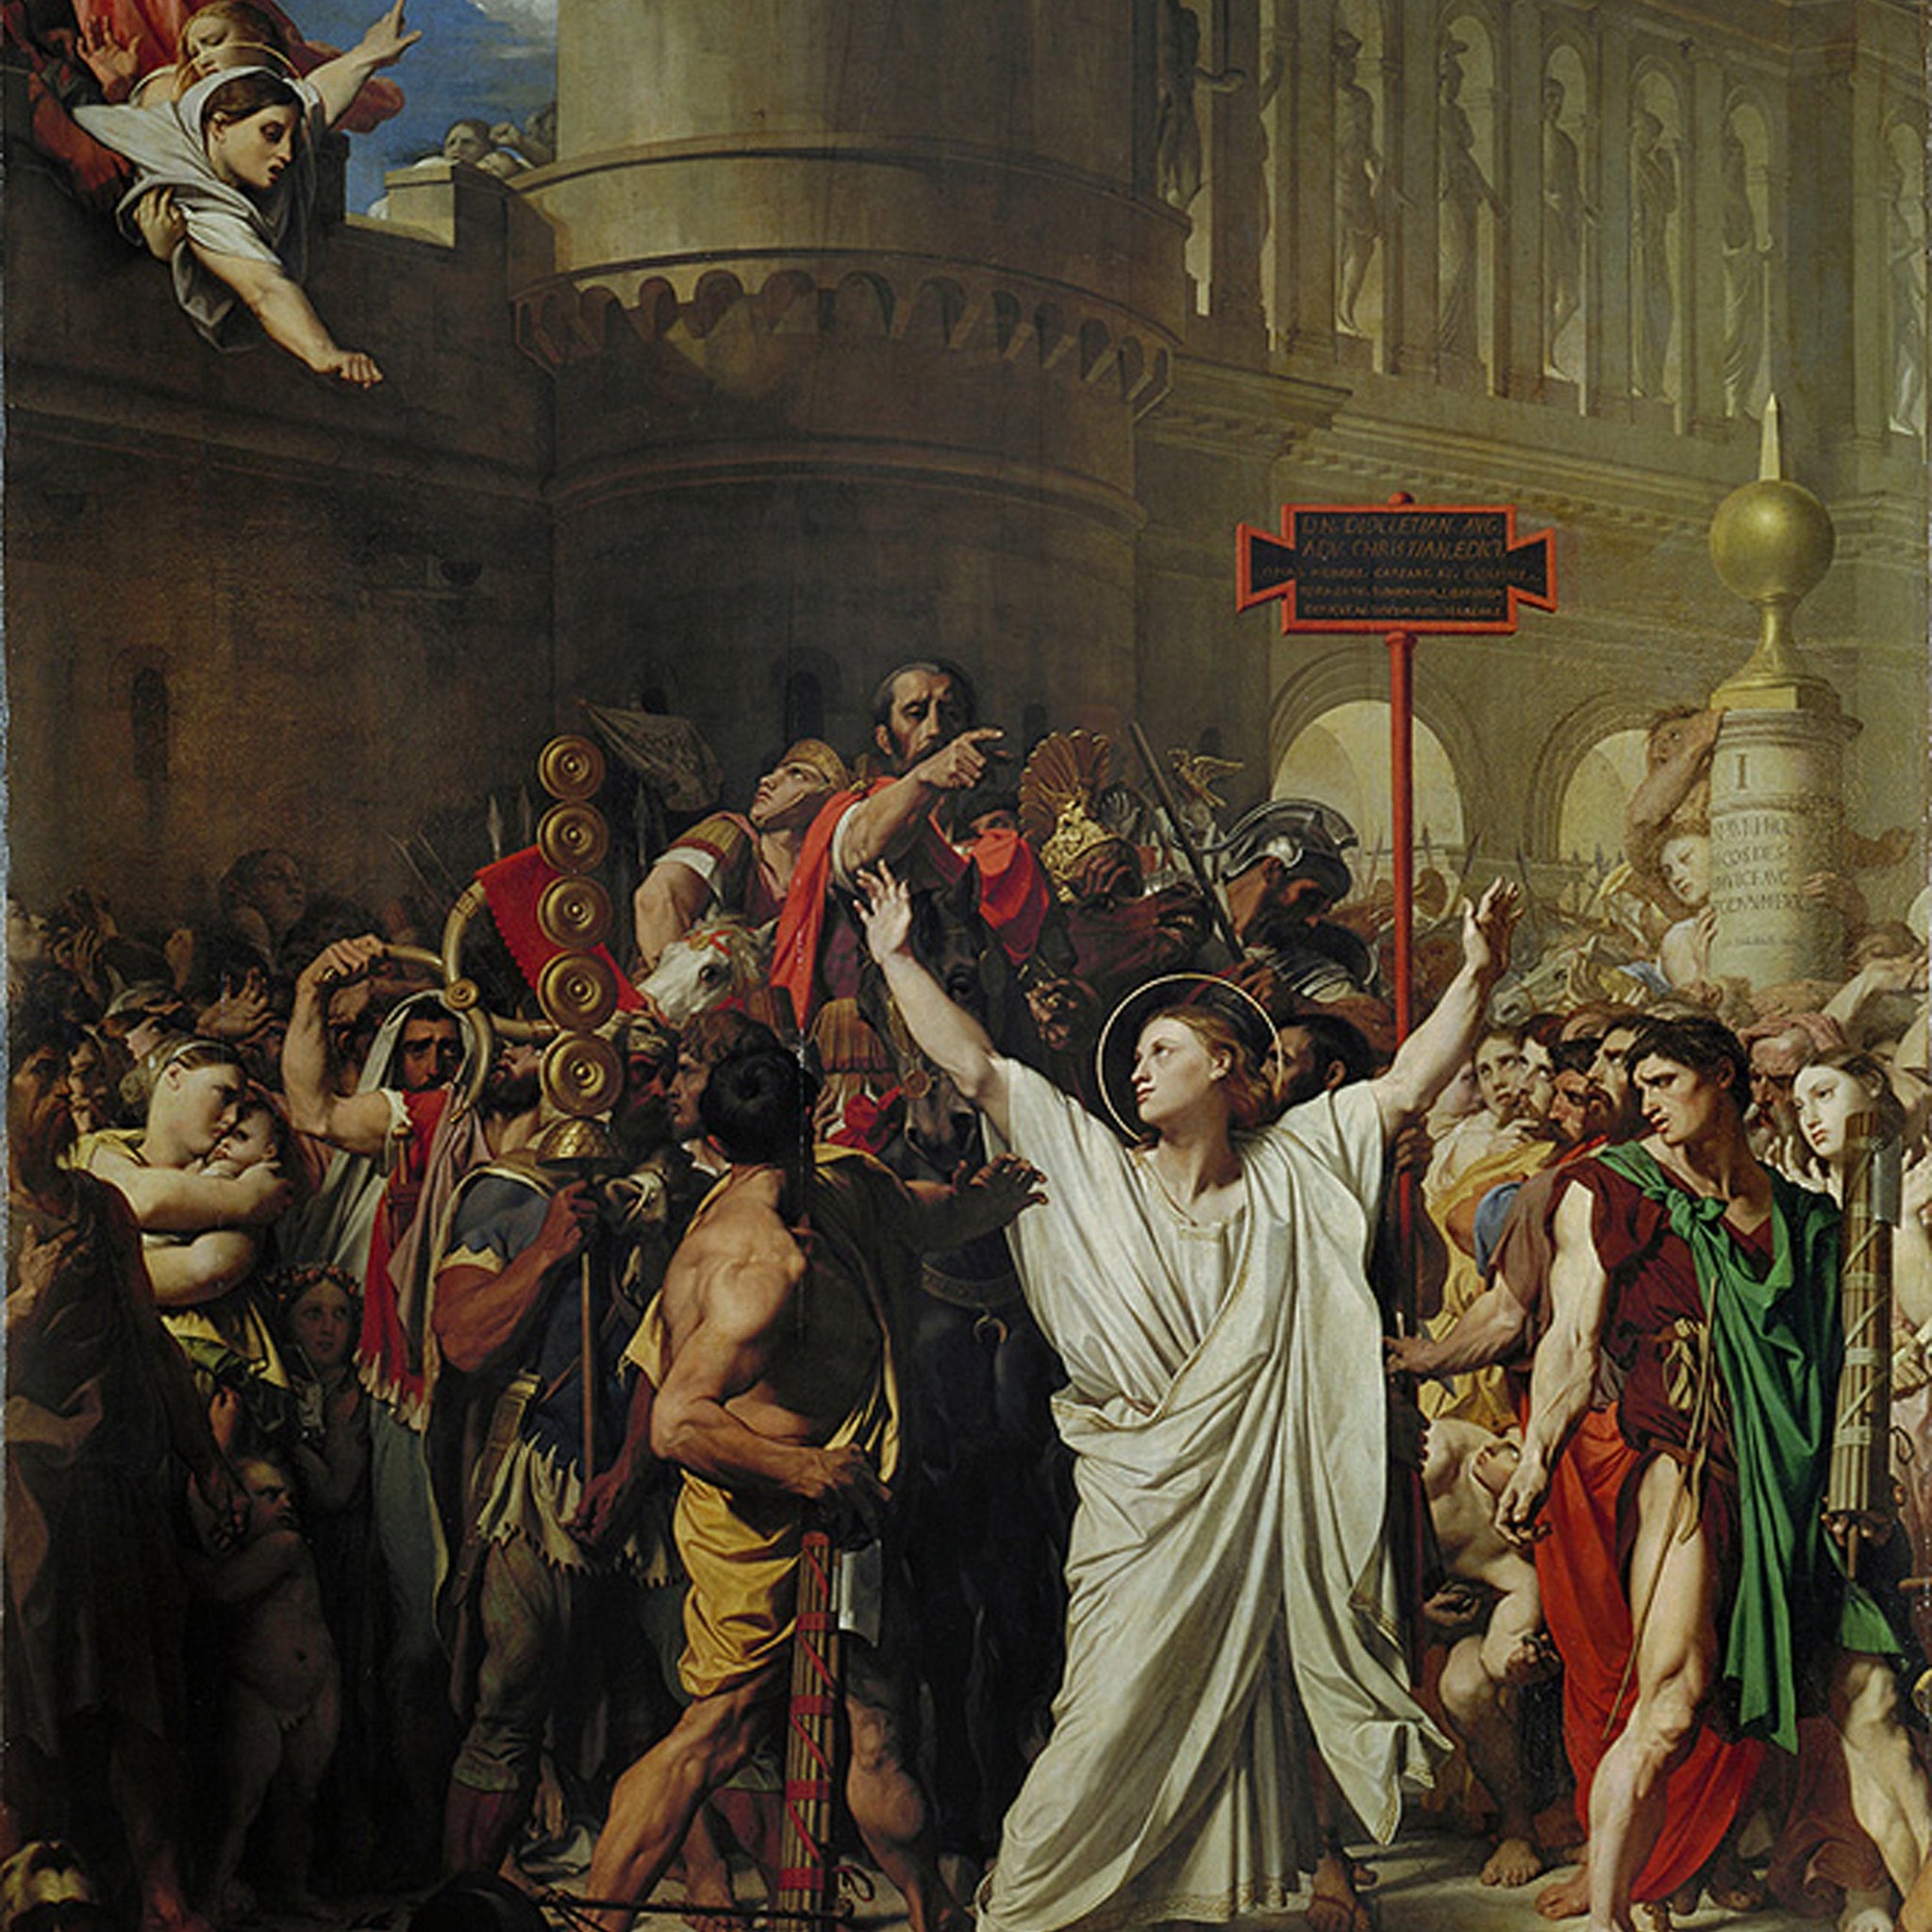 Martyr de Saint-Symphorien - Jean-Auguste-Dominique Ingres